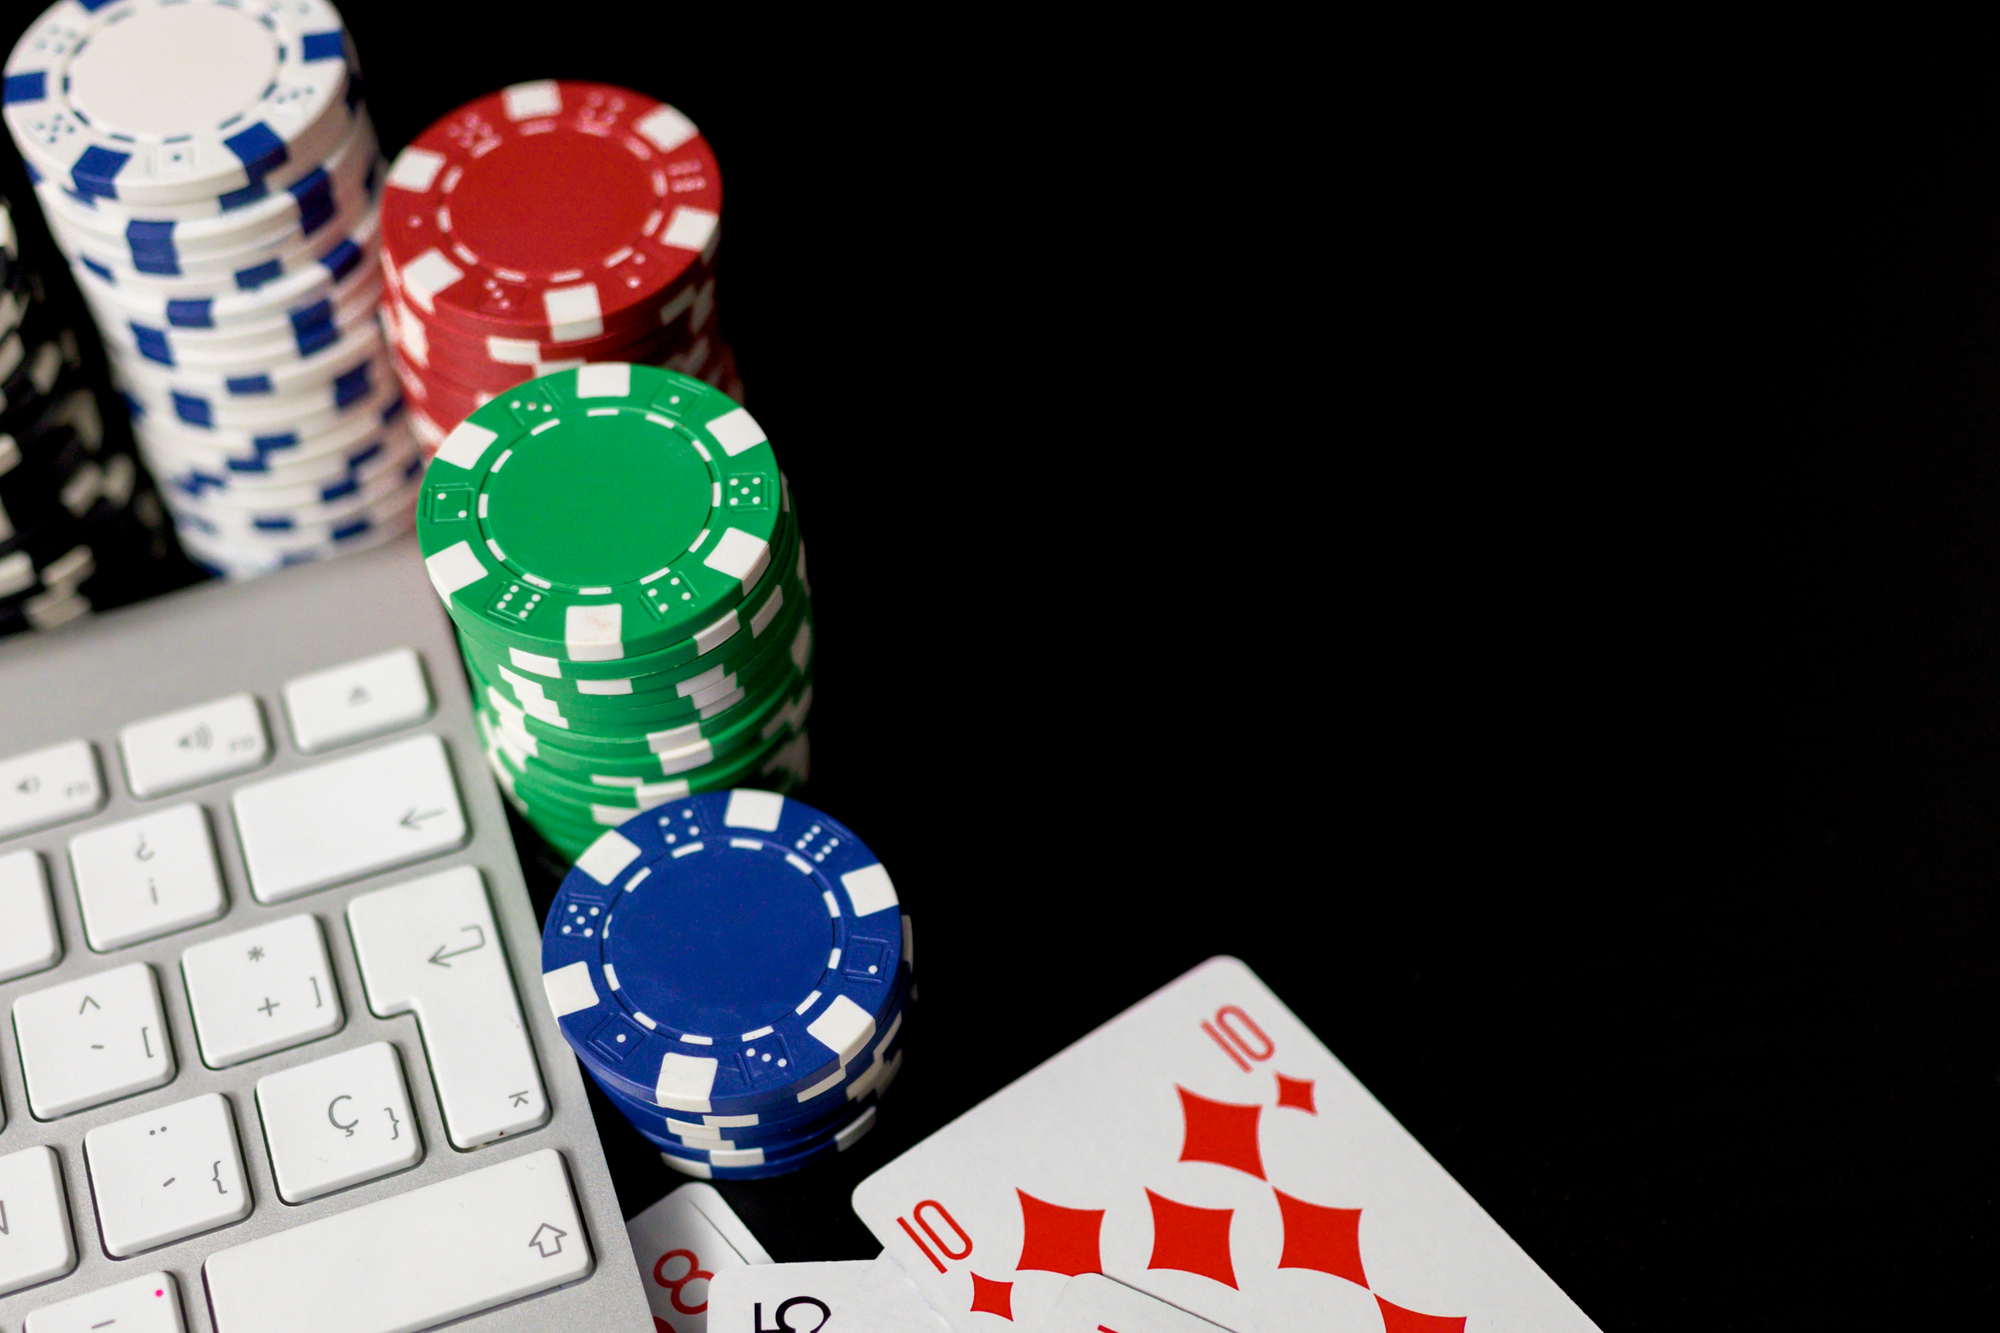 Deutsche Online-Casinos – Registrierungsmerkmale, Vor- und Nachteile auf der Website von Casino Zeus beschrieben